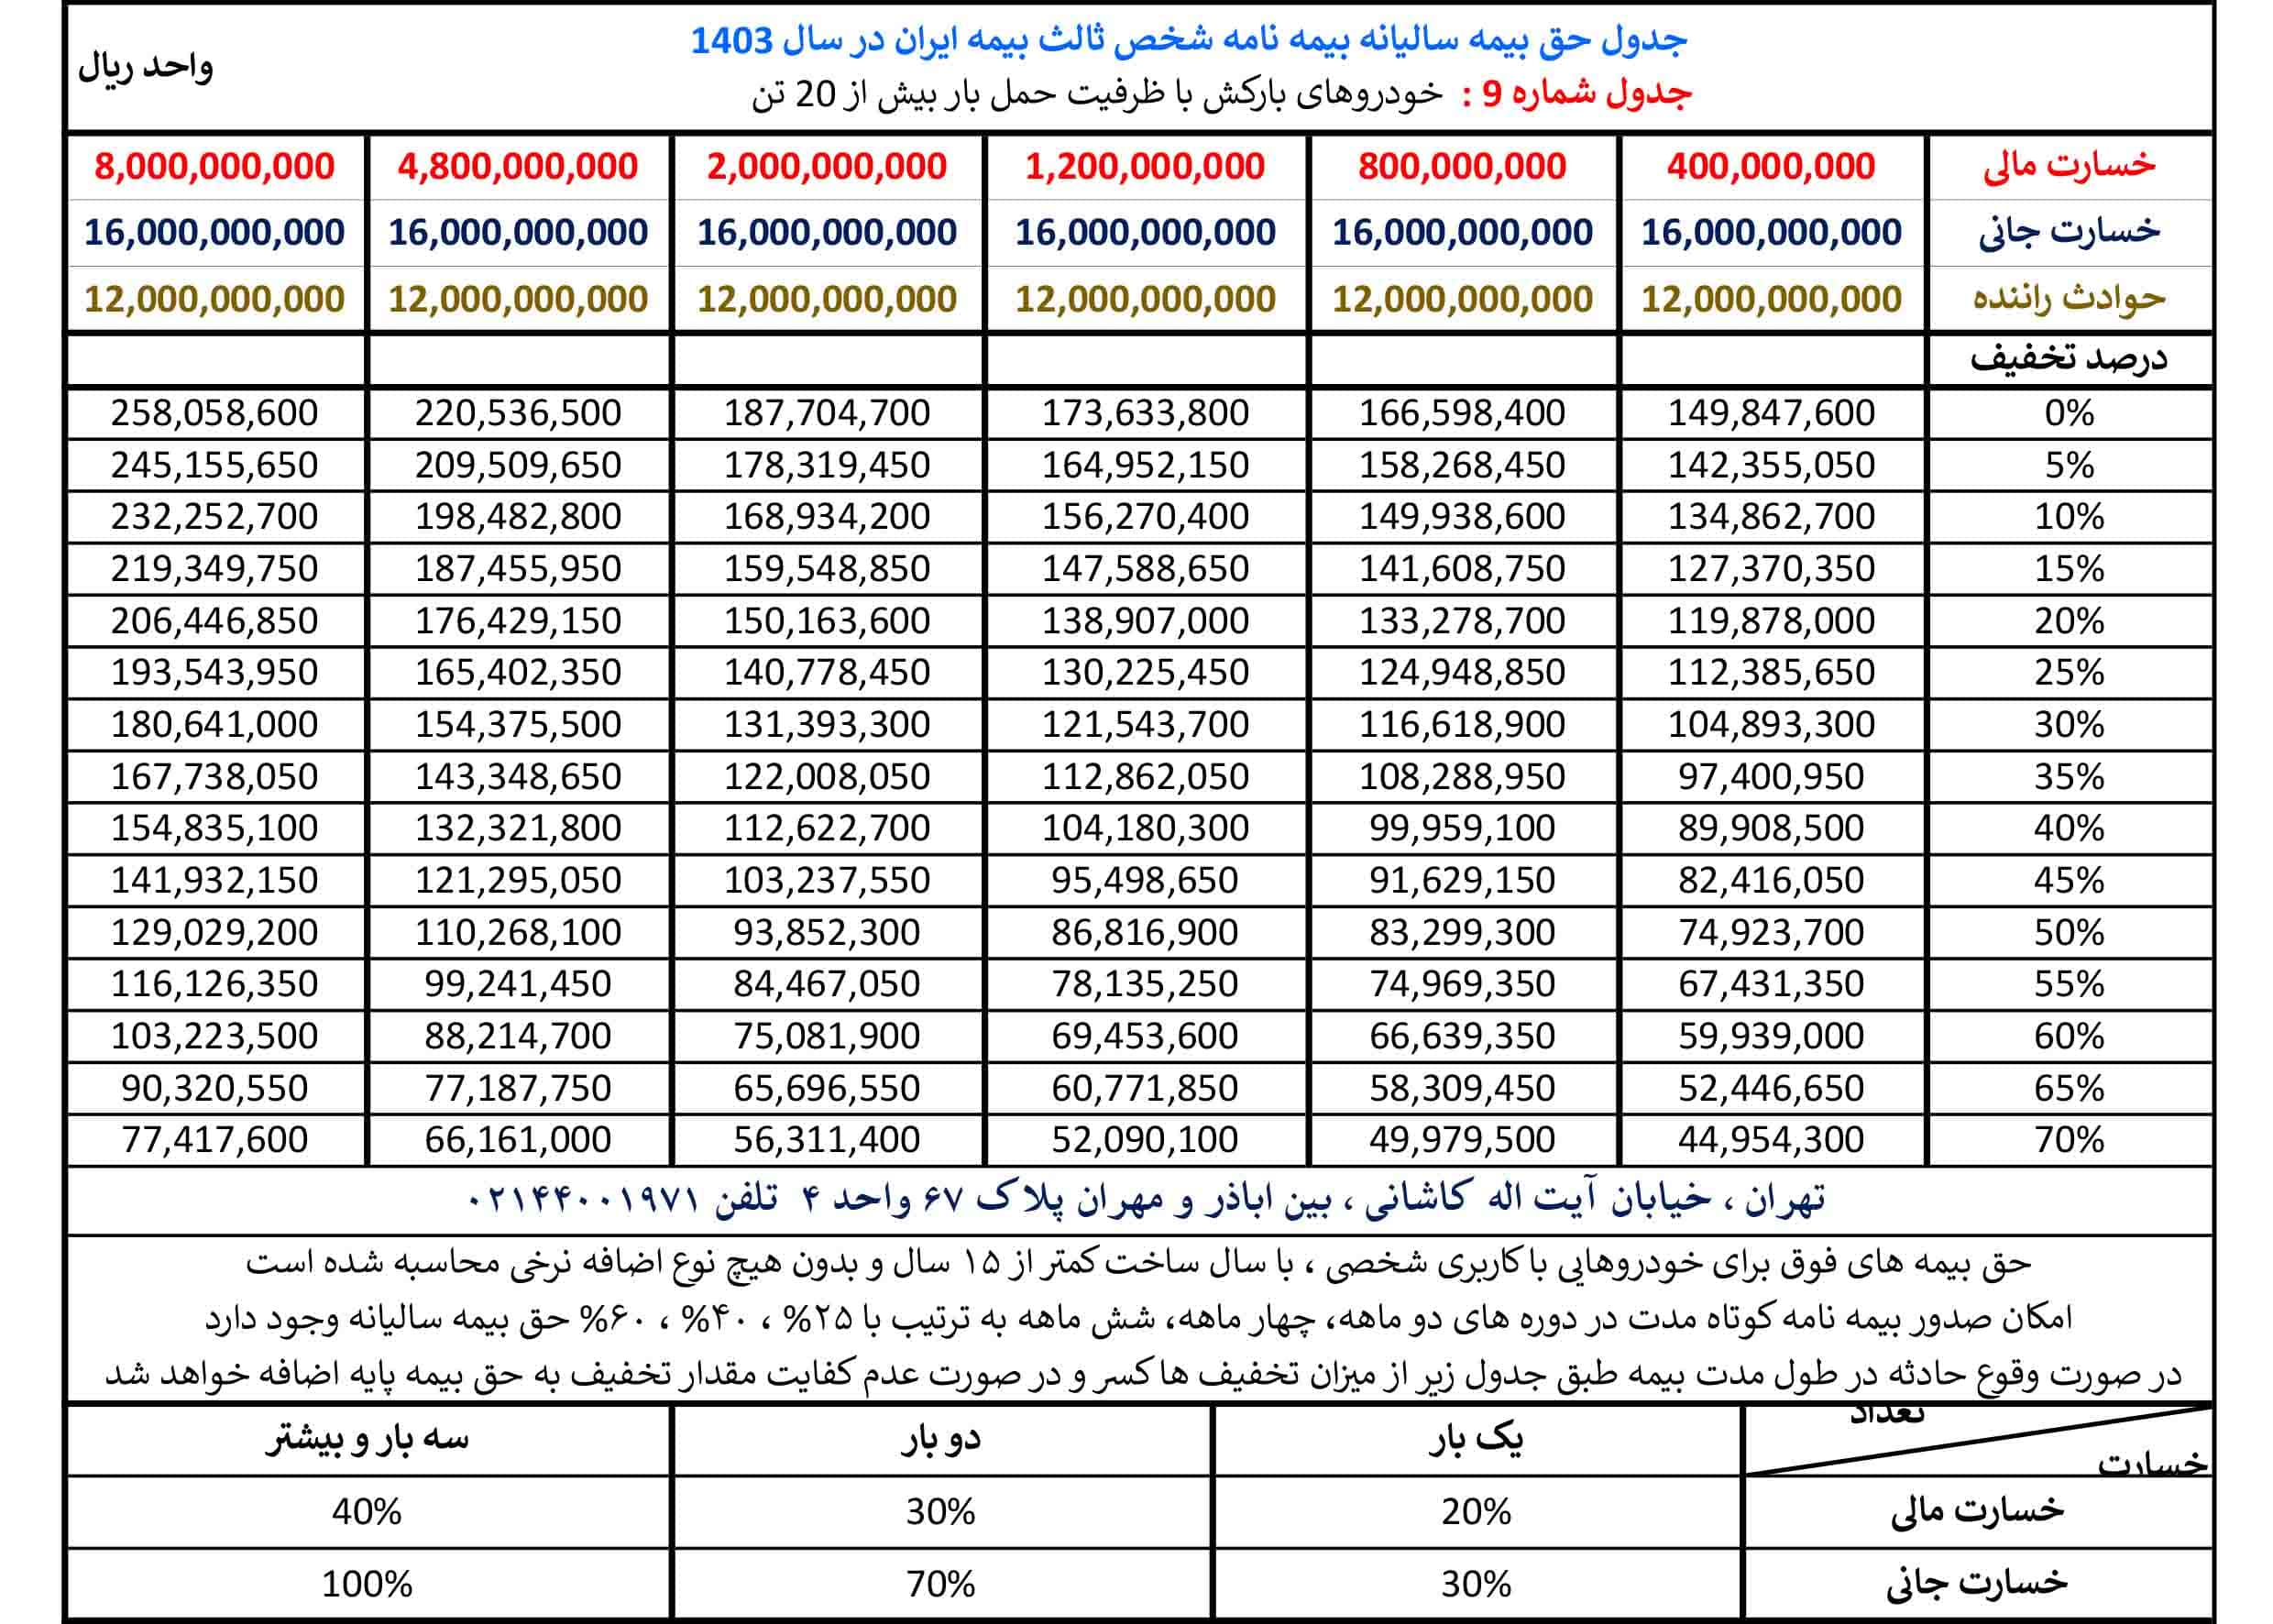 جدول حق بیمه بیمه شخص ثالث بیمه ایران در سال 1403 مربوط به گروه بارکش ها با ظرفیت بیش از 20 تن